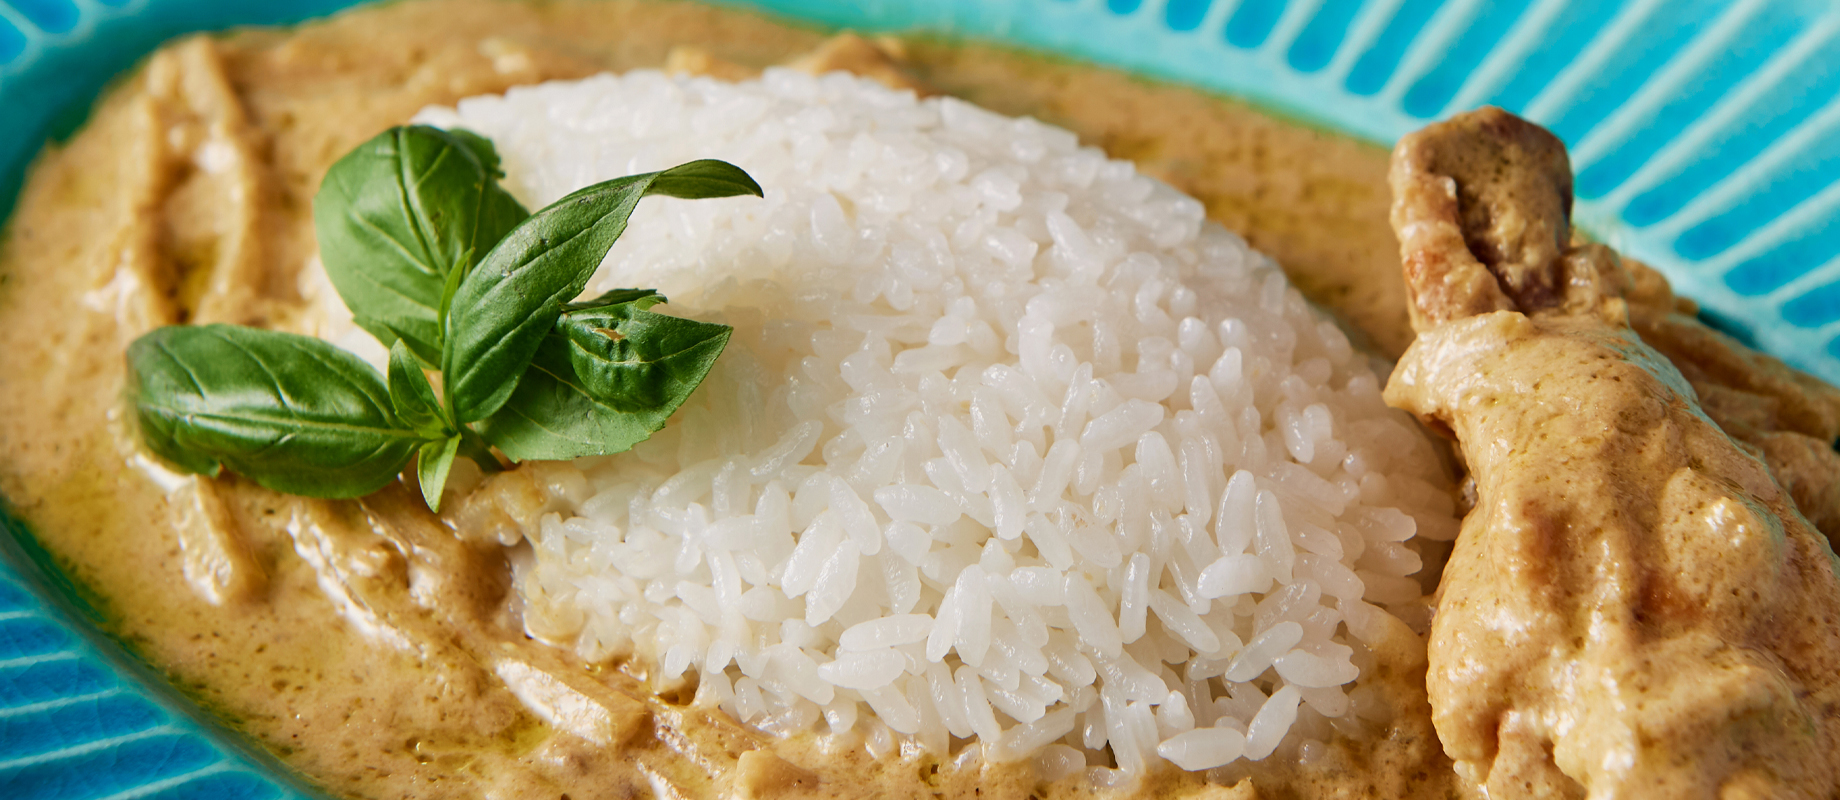 カレーには、カレーのためのお米を